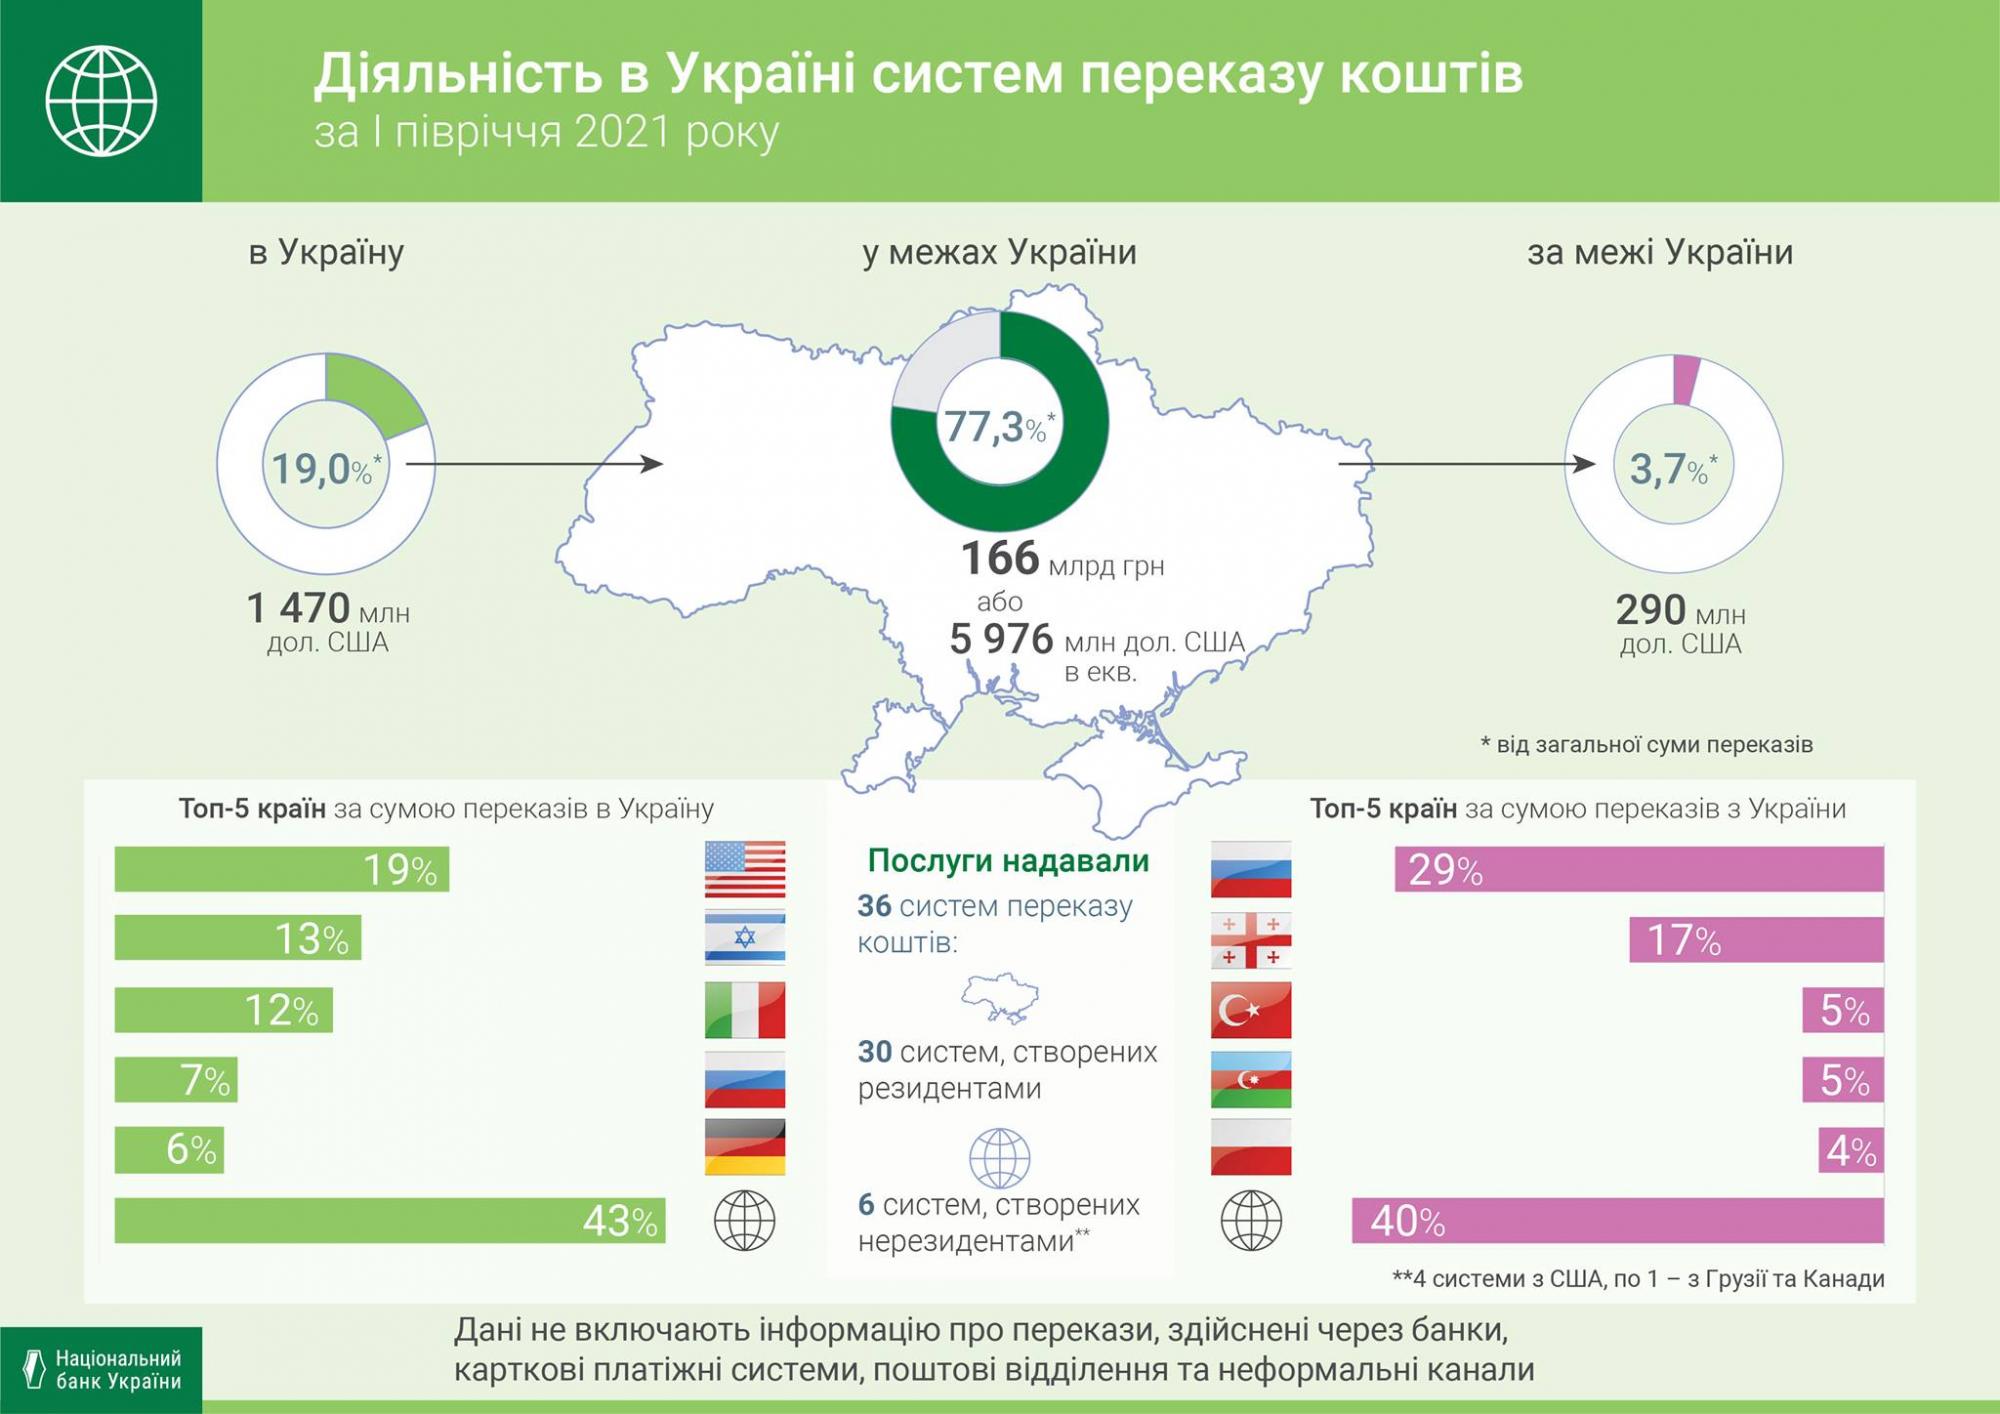 НБУ назвал крупнейших получателей денежных переводов из Украины